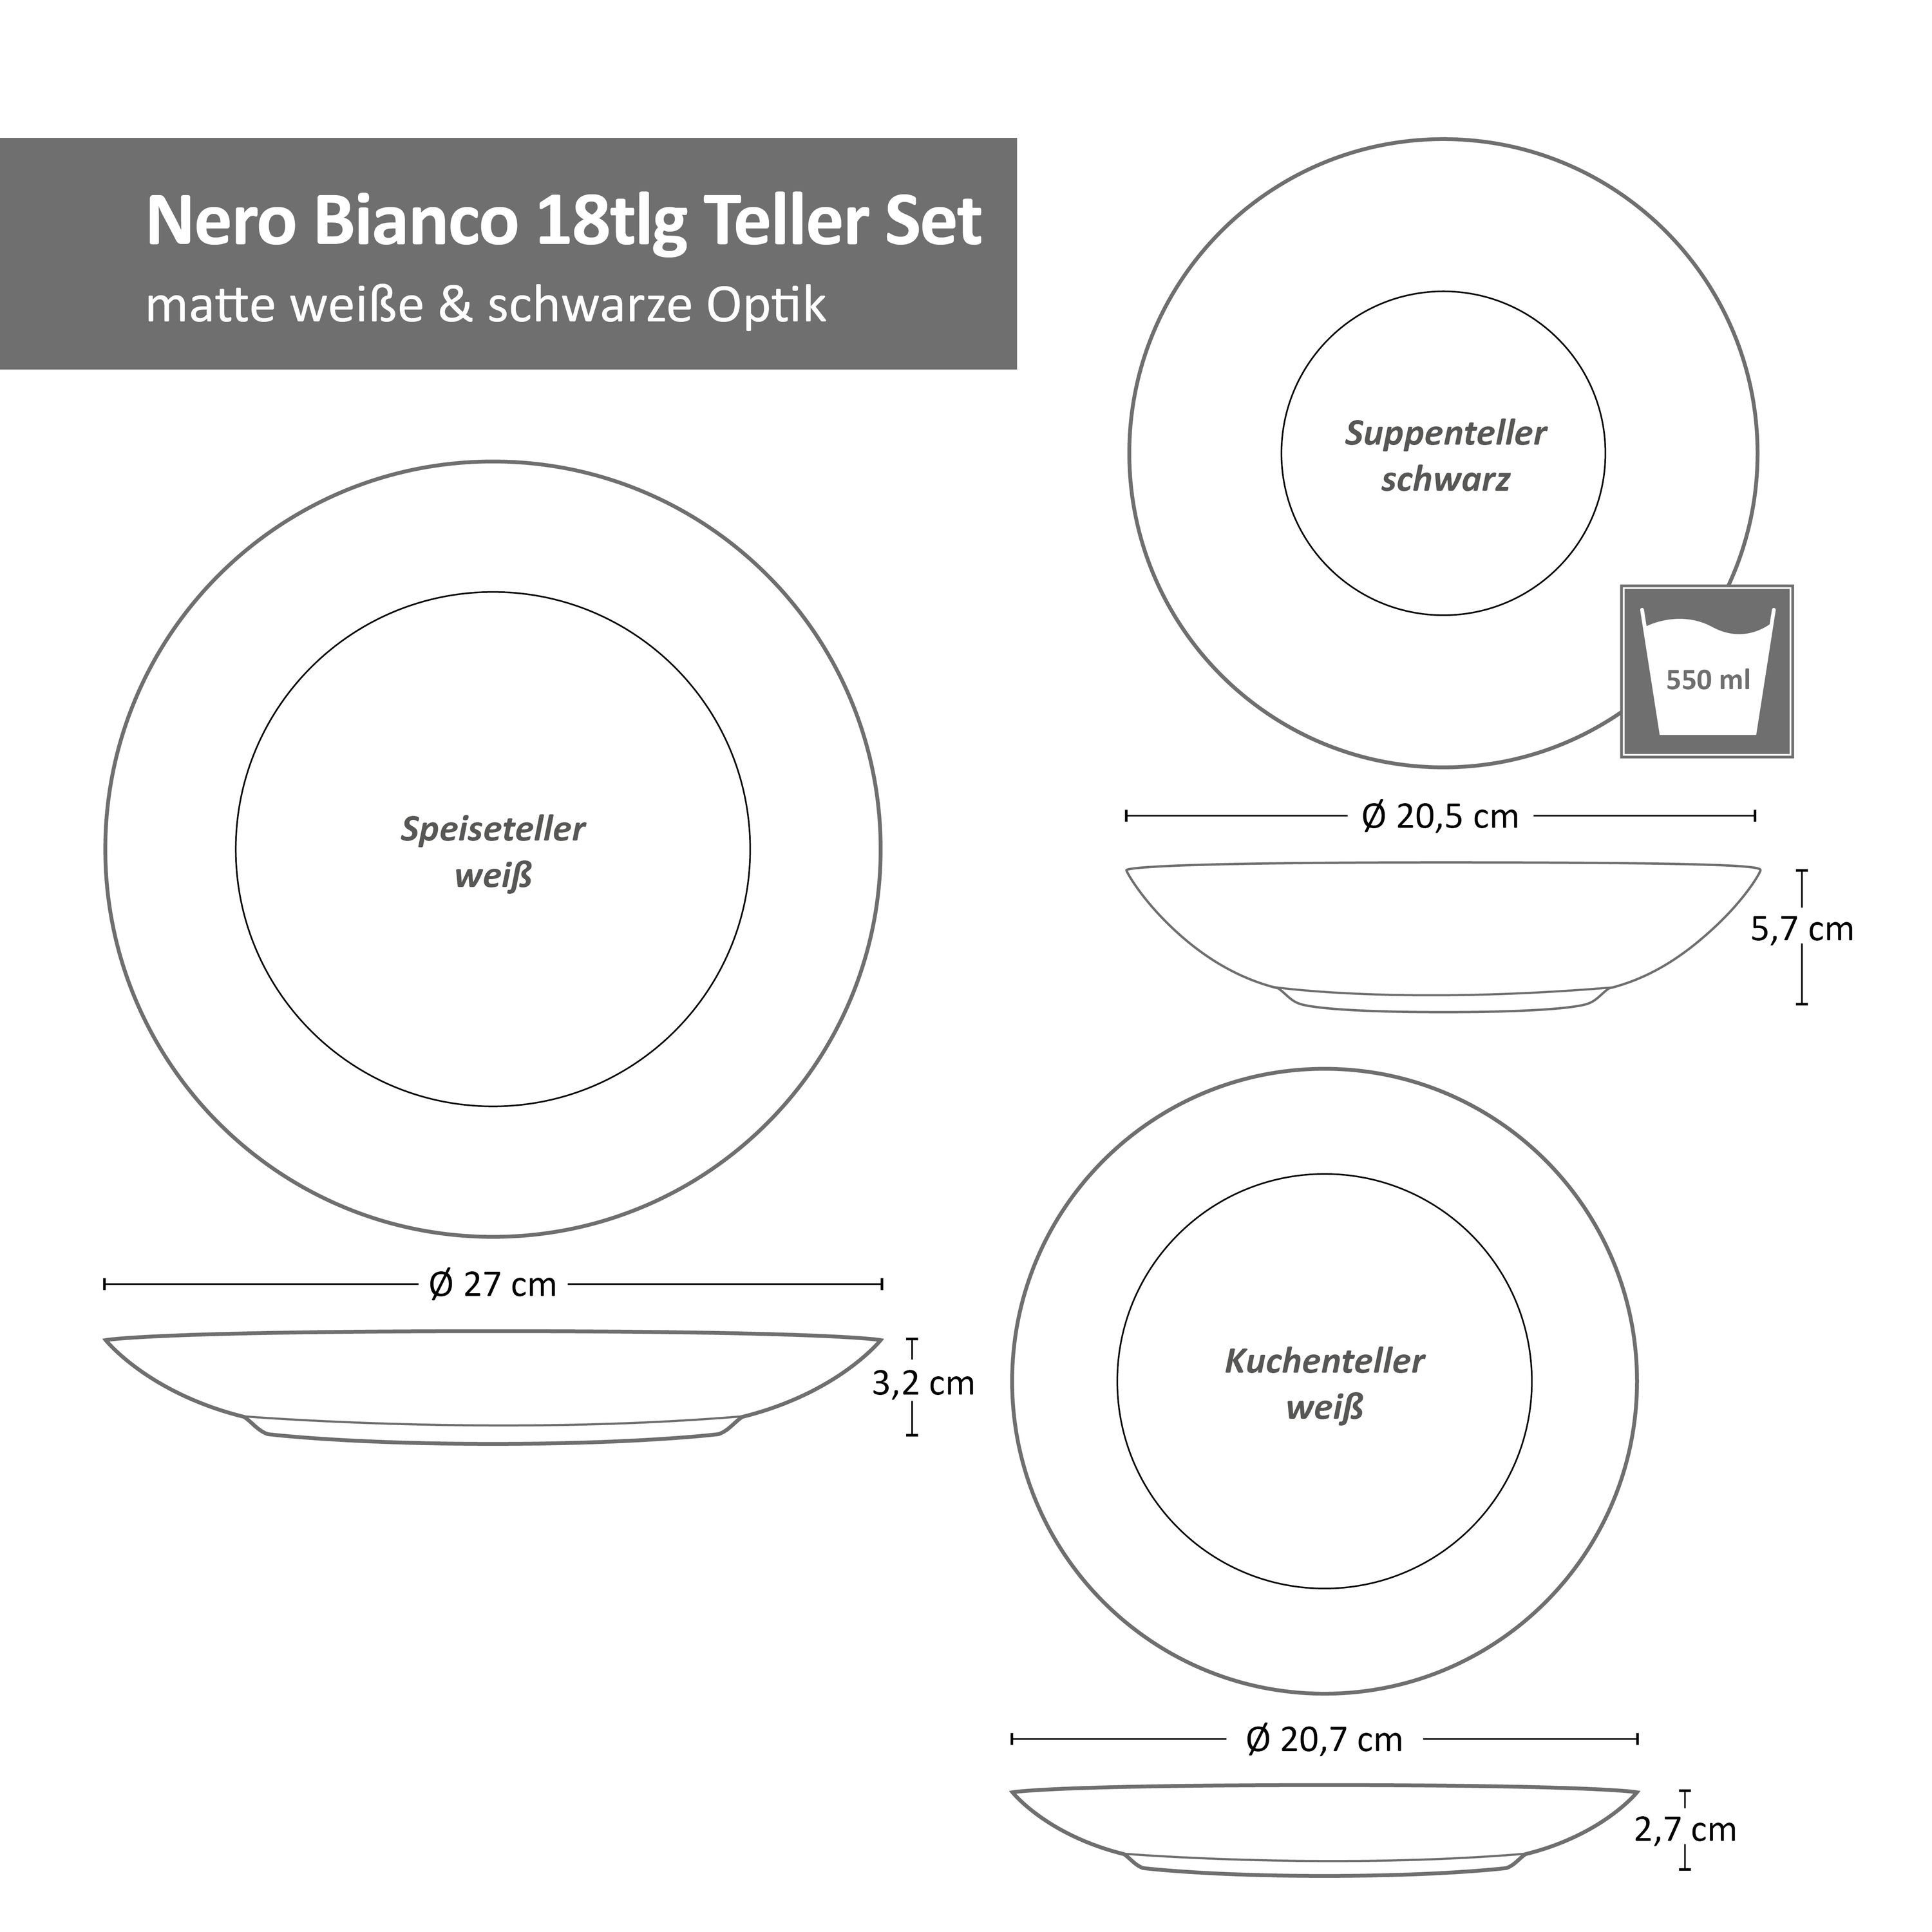 MamboCat Teller-Set Nero 6 Personen Tellerset Bianco Weiß 18-tlg. Steingut flach, Schwarz Teller